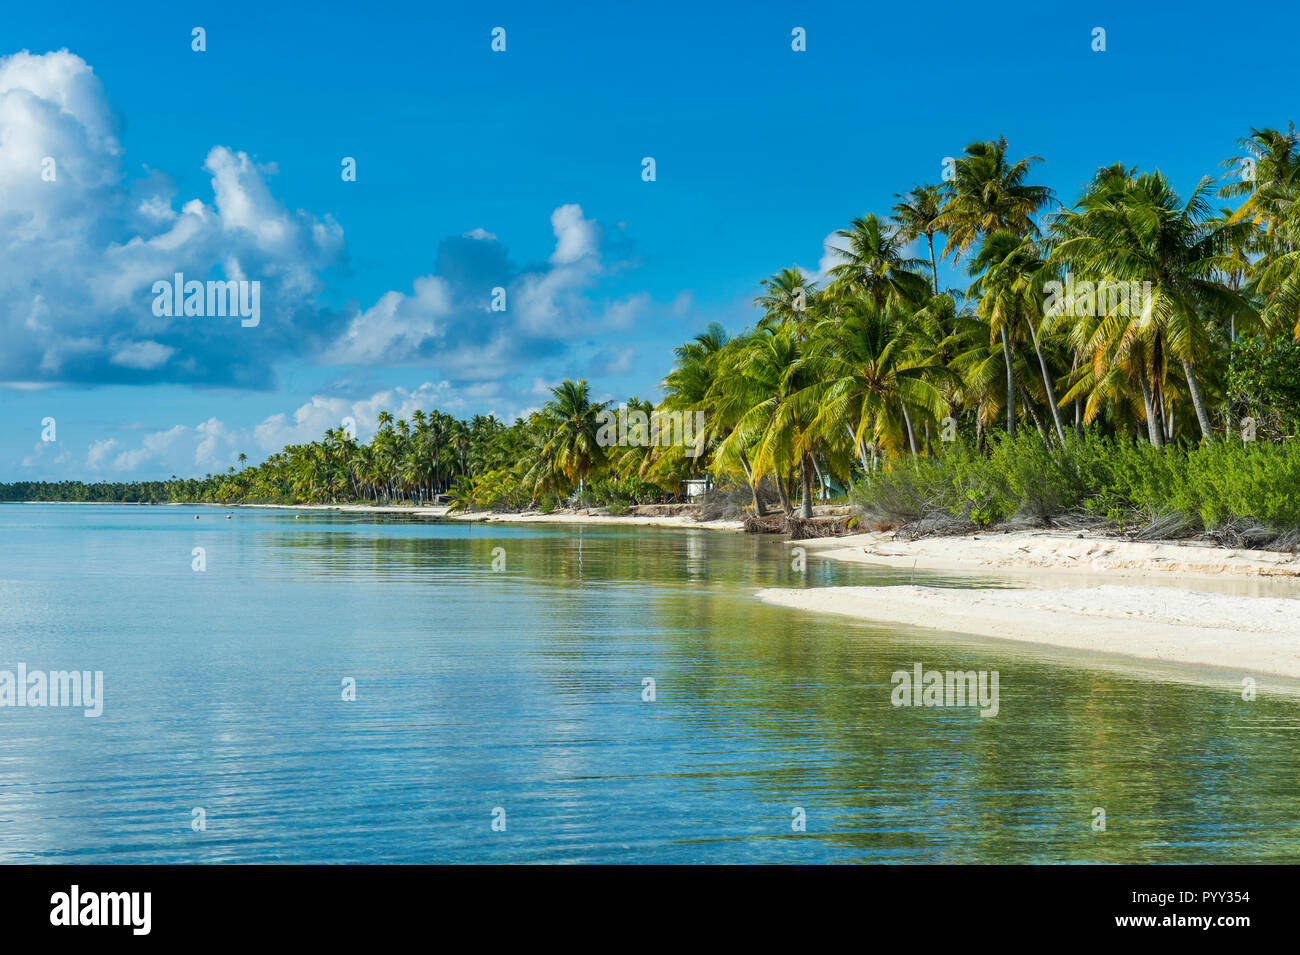 Palm fringed white sand beach in the turquoise waters of Tikehau, Tuamotu Archipelago, French Polynesia Stock Photo